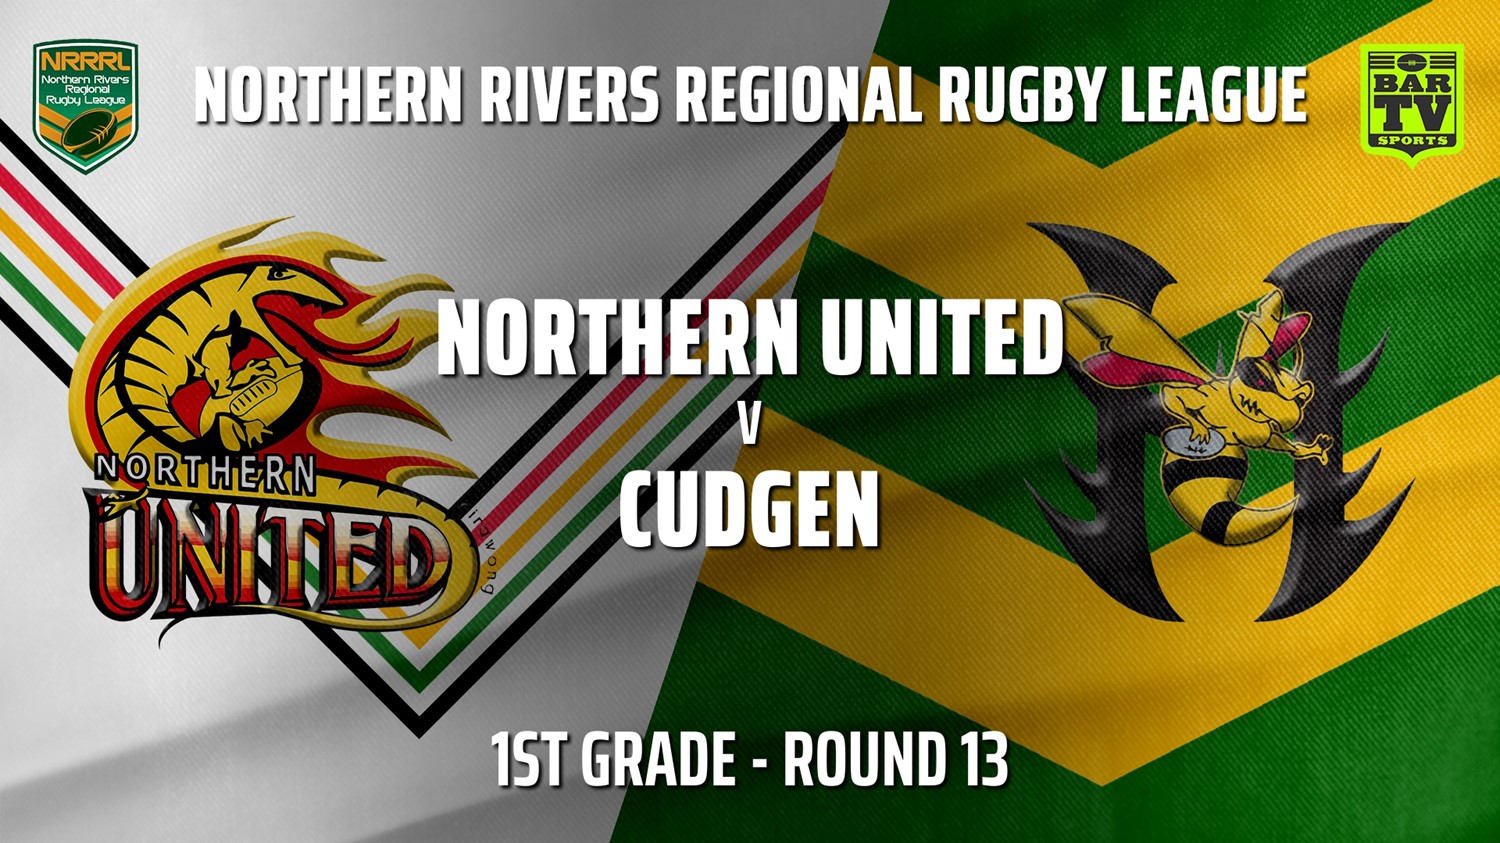 210731-Northern Rivers Round 13 - 1st Grade - Northern United v Cudgen Hornets Slate Image